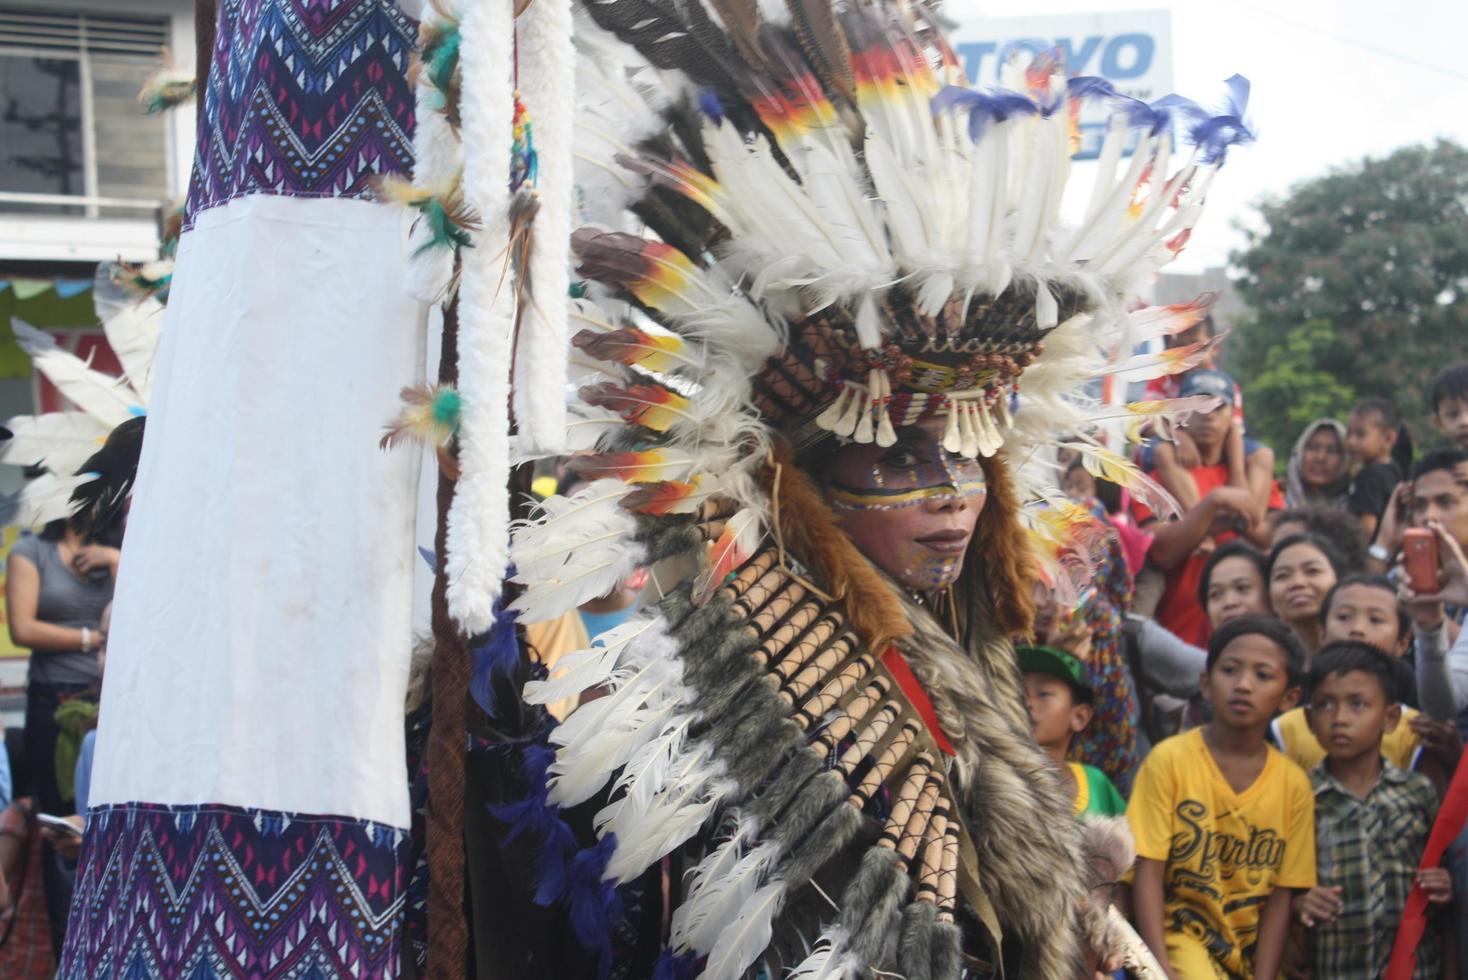 jember, jawa Timour, Indonésie - août 25, 2015 jember mode carnaval les participants sont donnant leur meilleur performance avec leur costumes et expressions pendant le événement, sélectif se concentrer. photo